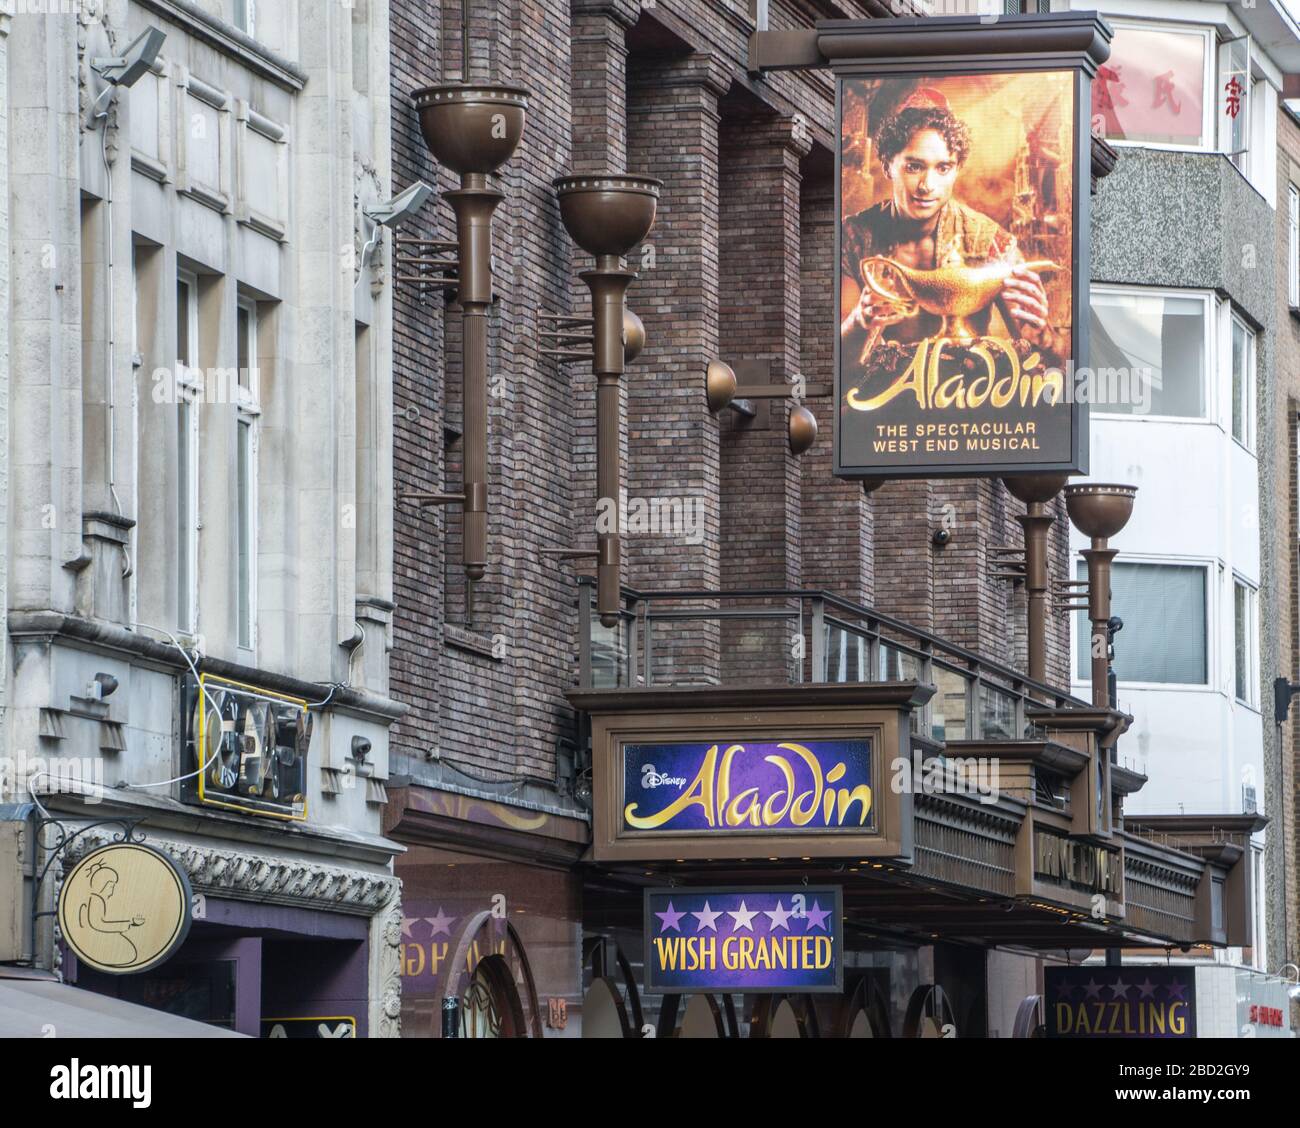 LONDRES- extérieur du théâtre du Prince-Édouard montrant Aladdin. Une comédie musicale populaire dans le West End de Londres Banque D'Images